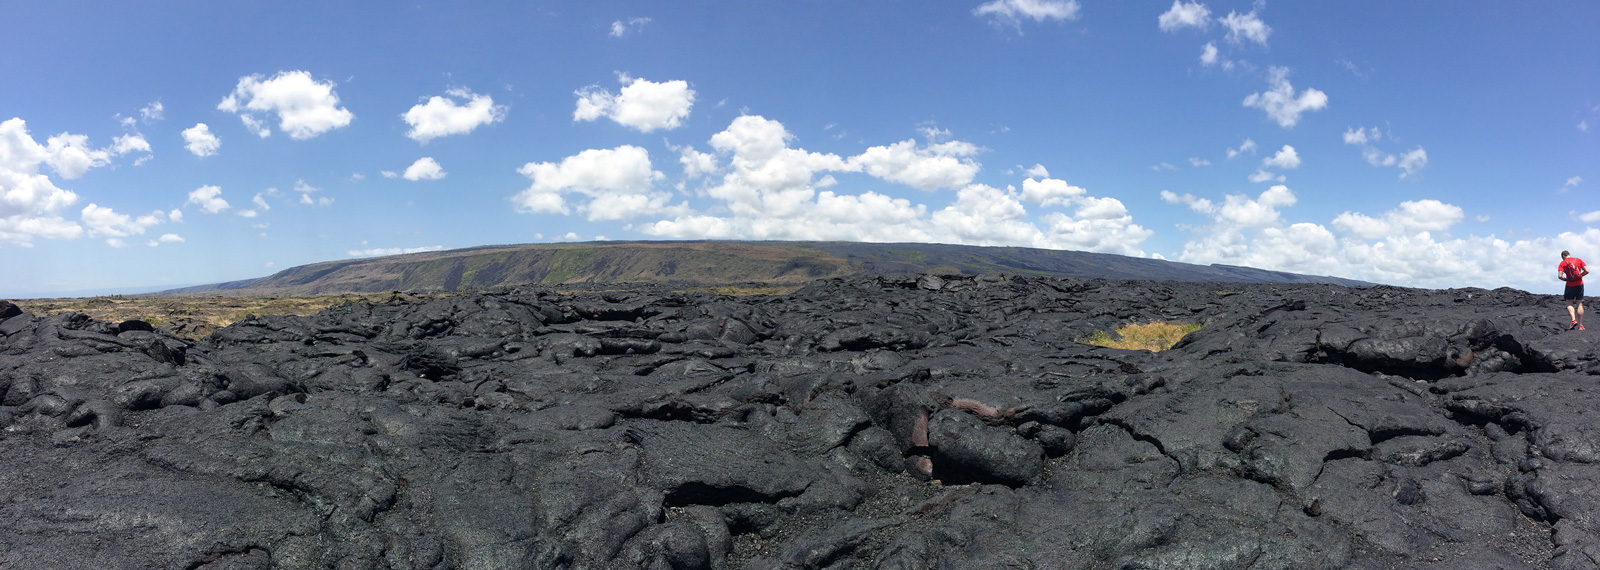 Národný park vulkánov - Big Island of Hawaii